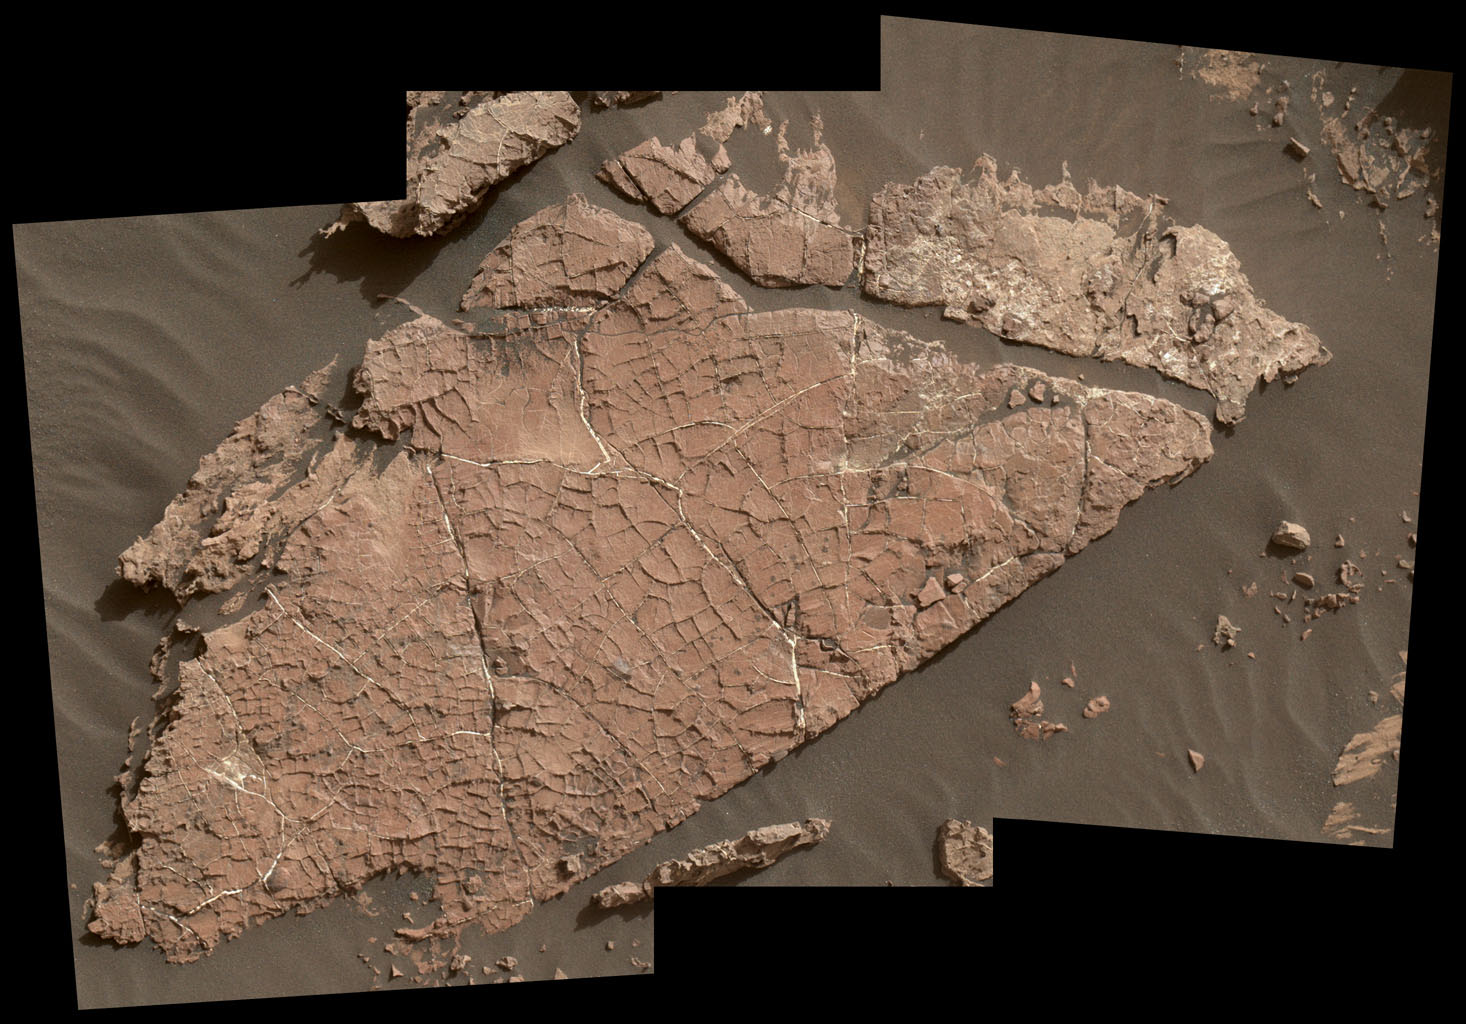 A repedéshálózatok ezen a marsi sziklán valószínűleg egy több mint 3 milliárd éves, kiszáradó sárréteg nyomait őrzik.